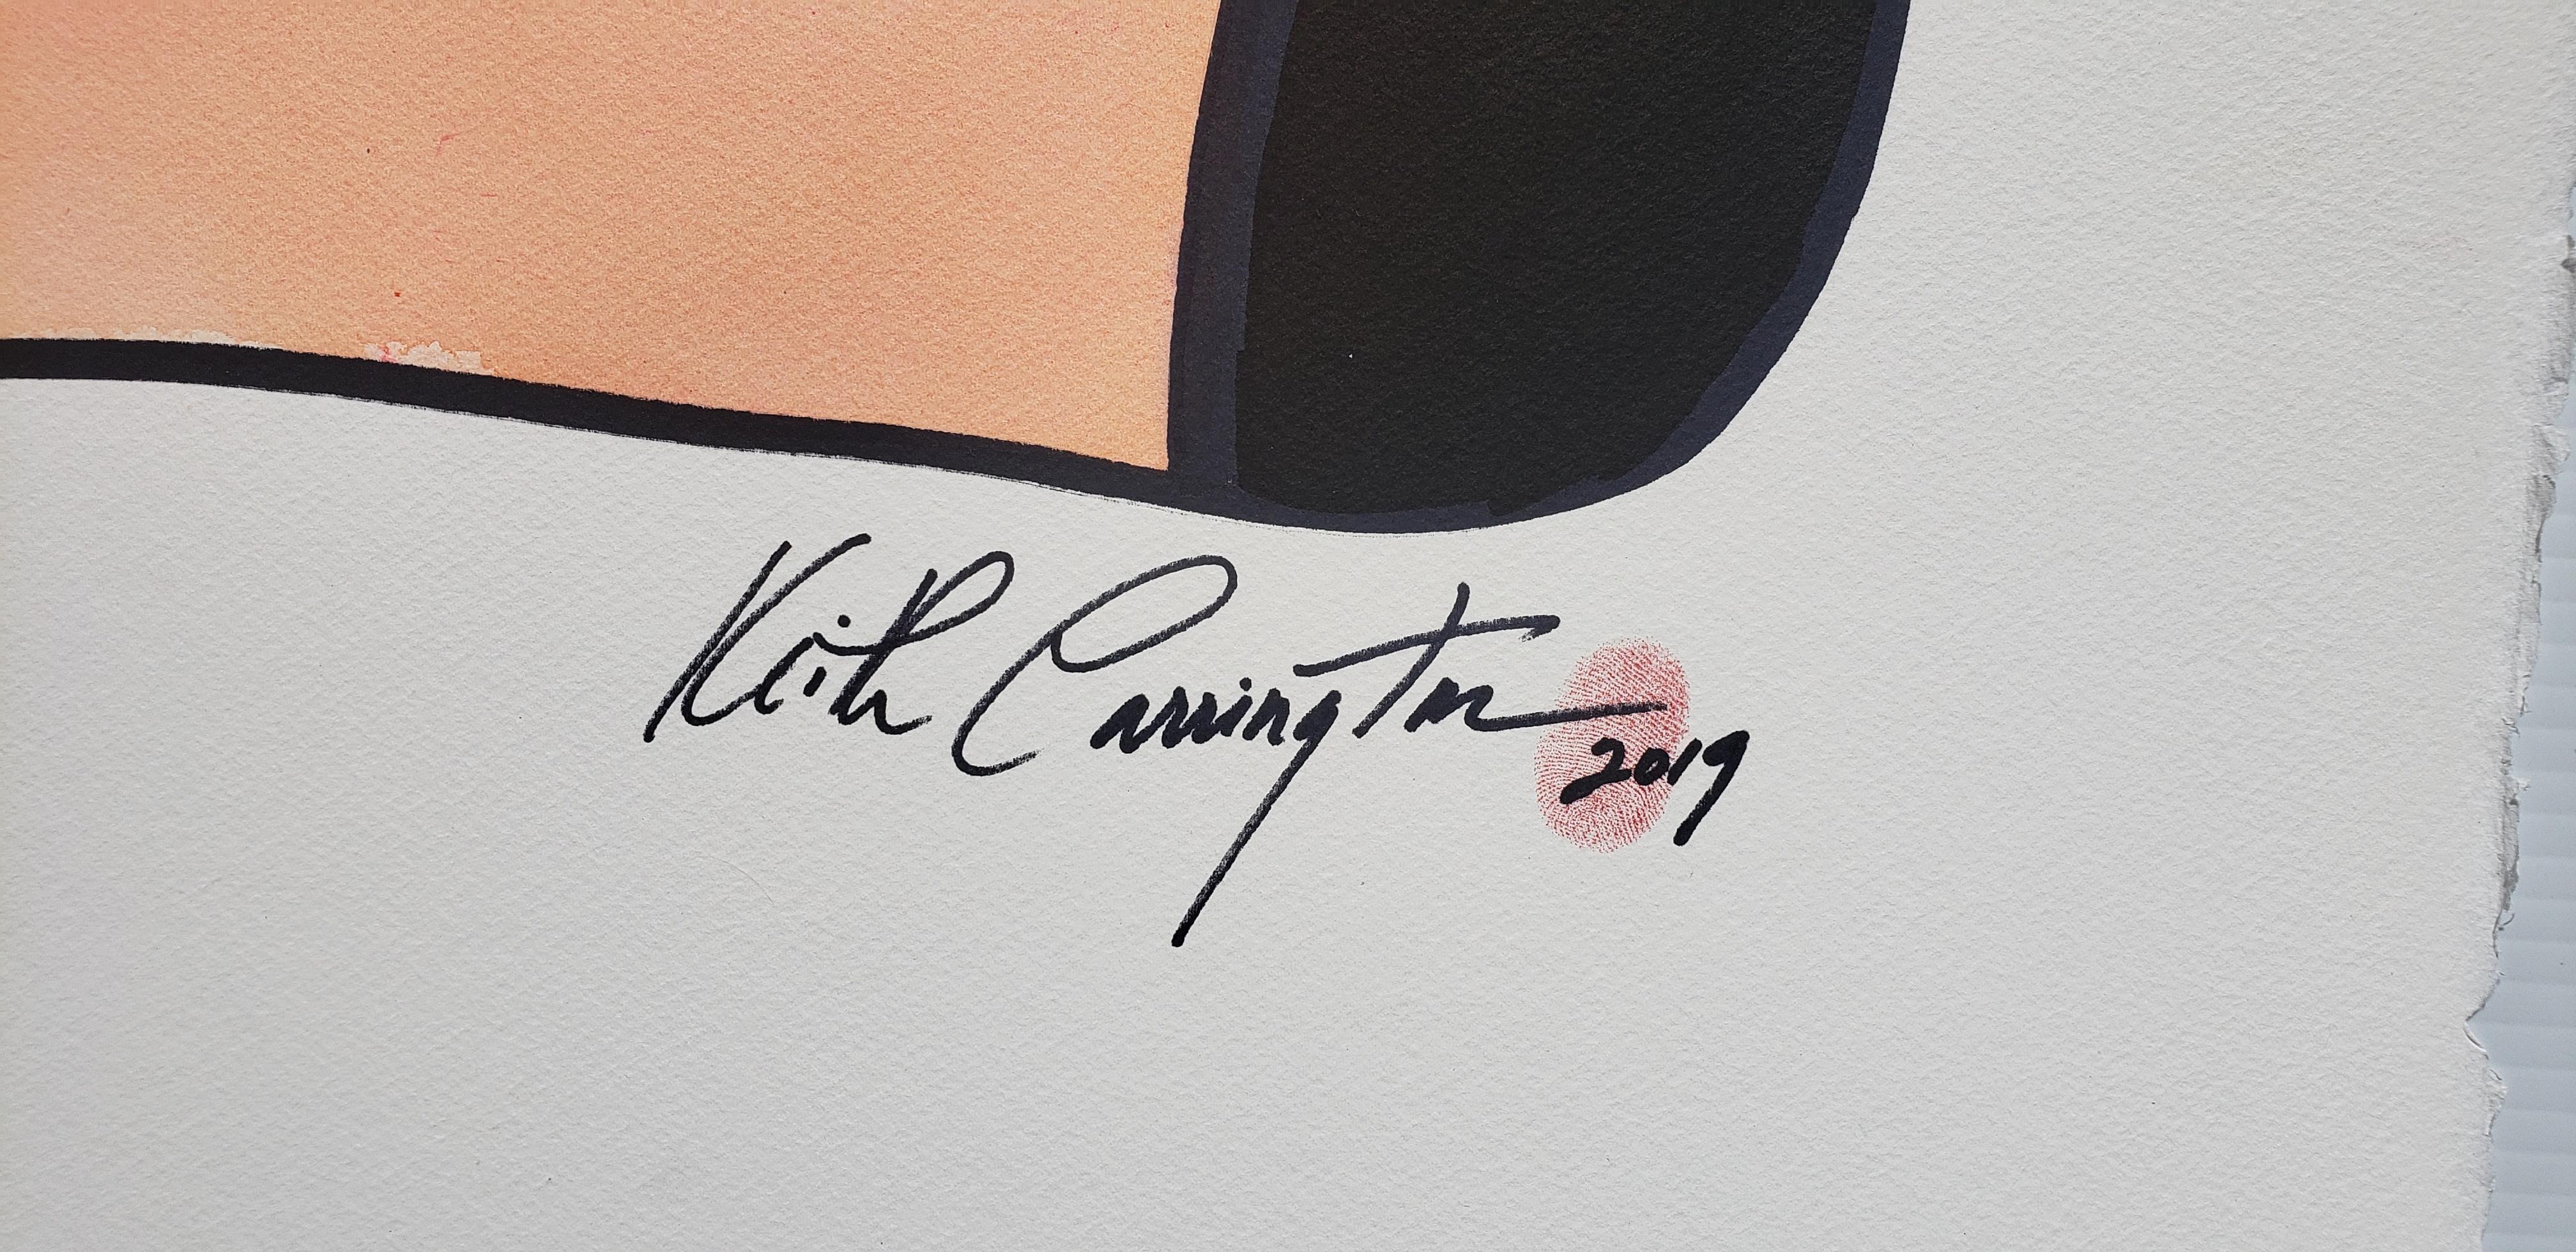 Ich bin fabelhaft, Tinte auf Papier.
Keith Carringtons Erfahrungen haben ihn dazu gebracht, seine Talente mit den flüssigen und anspruchsvollen Medien Aquarell und Tinte auszudrücken.  Er hat seine Fähigkeiten verfeinert, seine Vision geklärt,